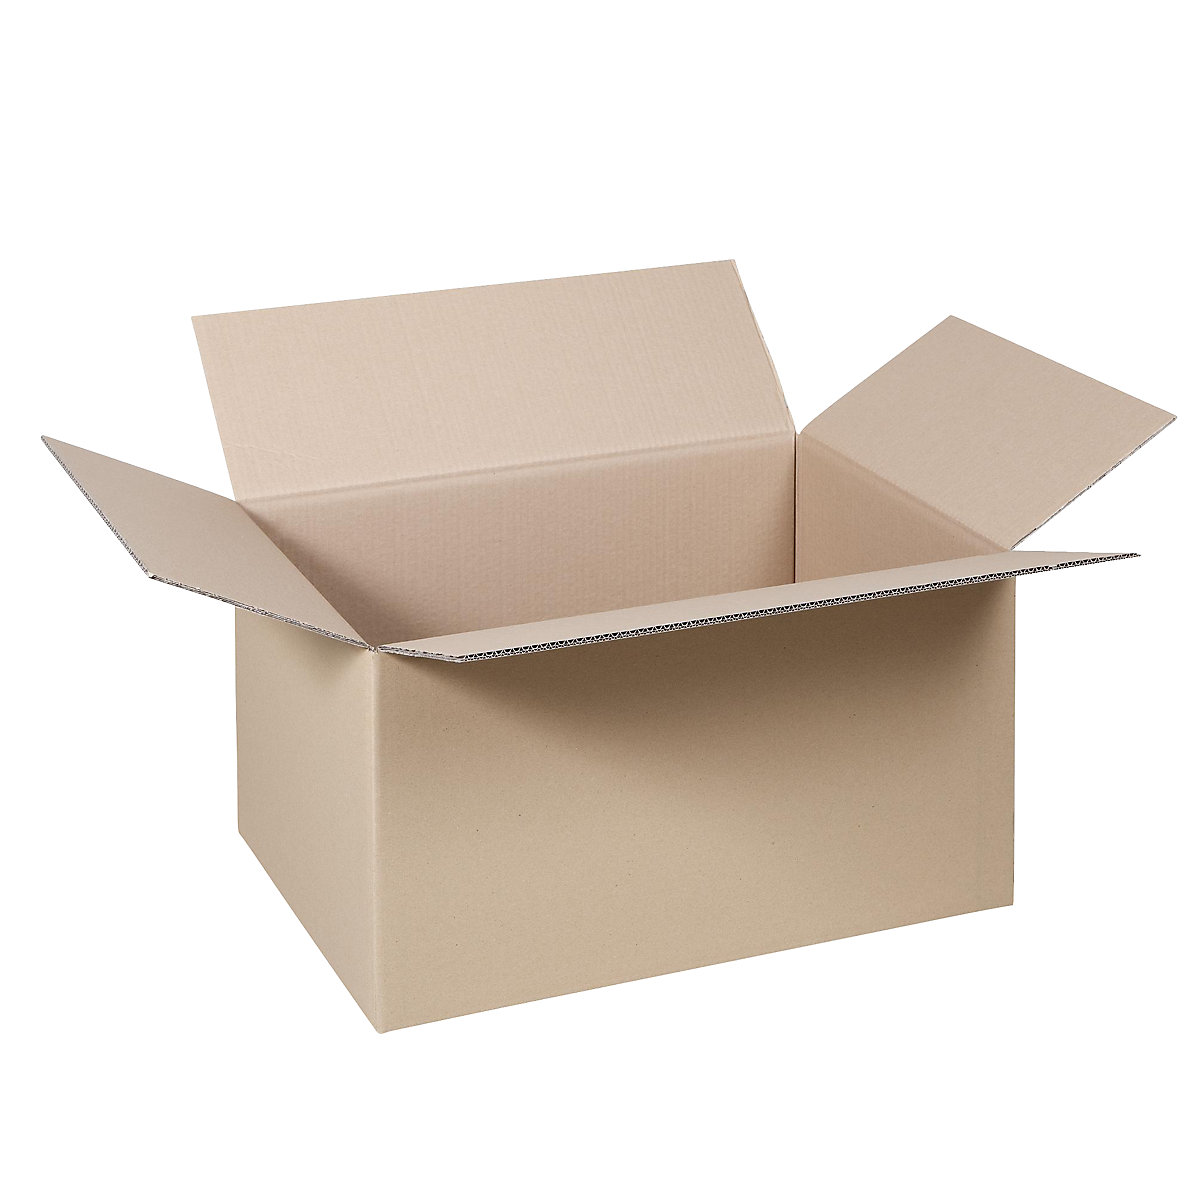 Cutie de carton pliantă, FEFCO 0201, cu 2 straturi de carton ondulat, dimensiuni interioare 300 x 200 x 170 mm, amb. 50 buc.-28